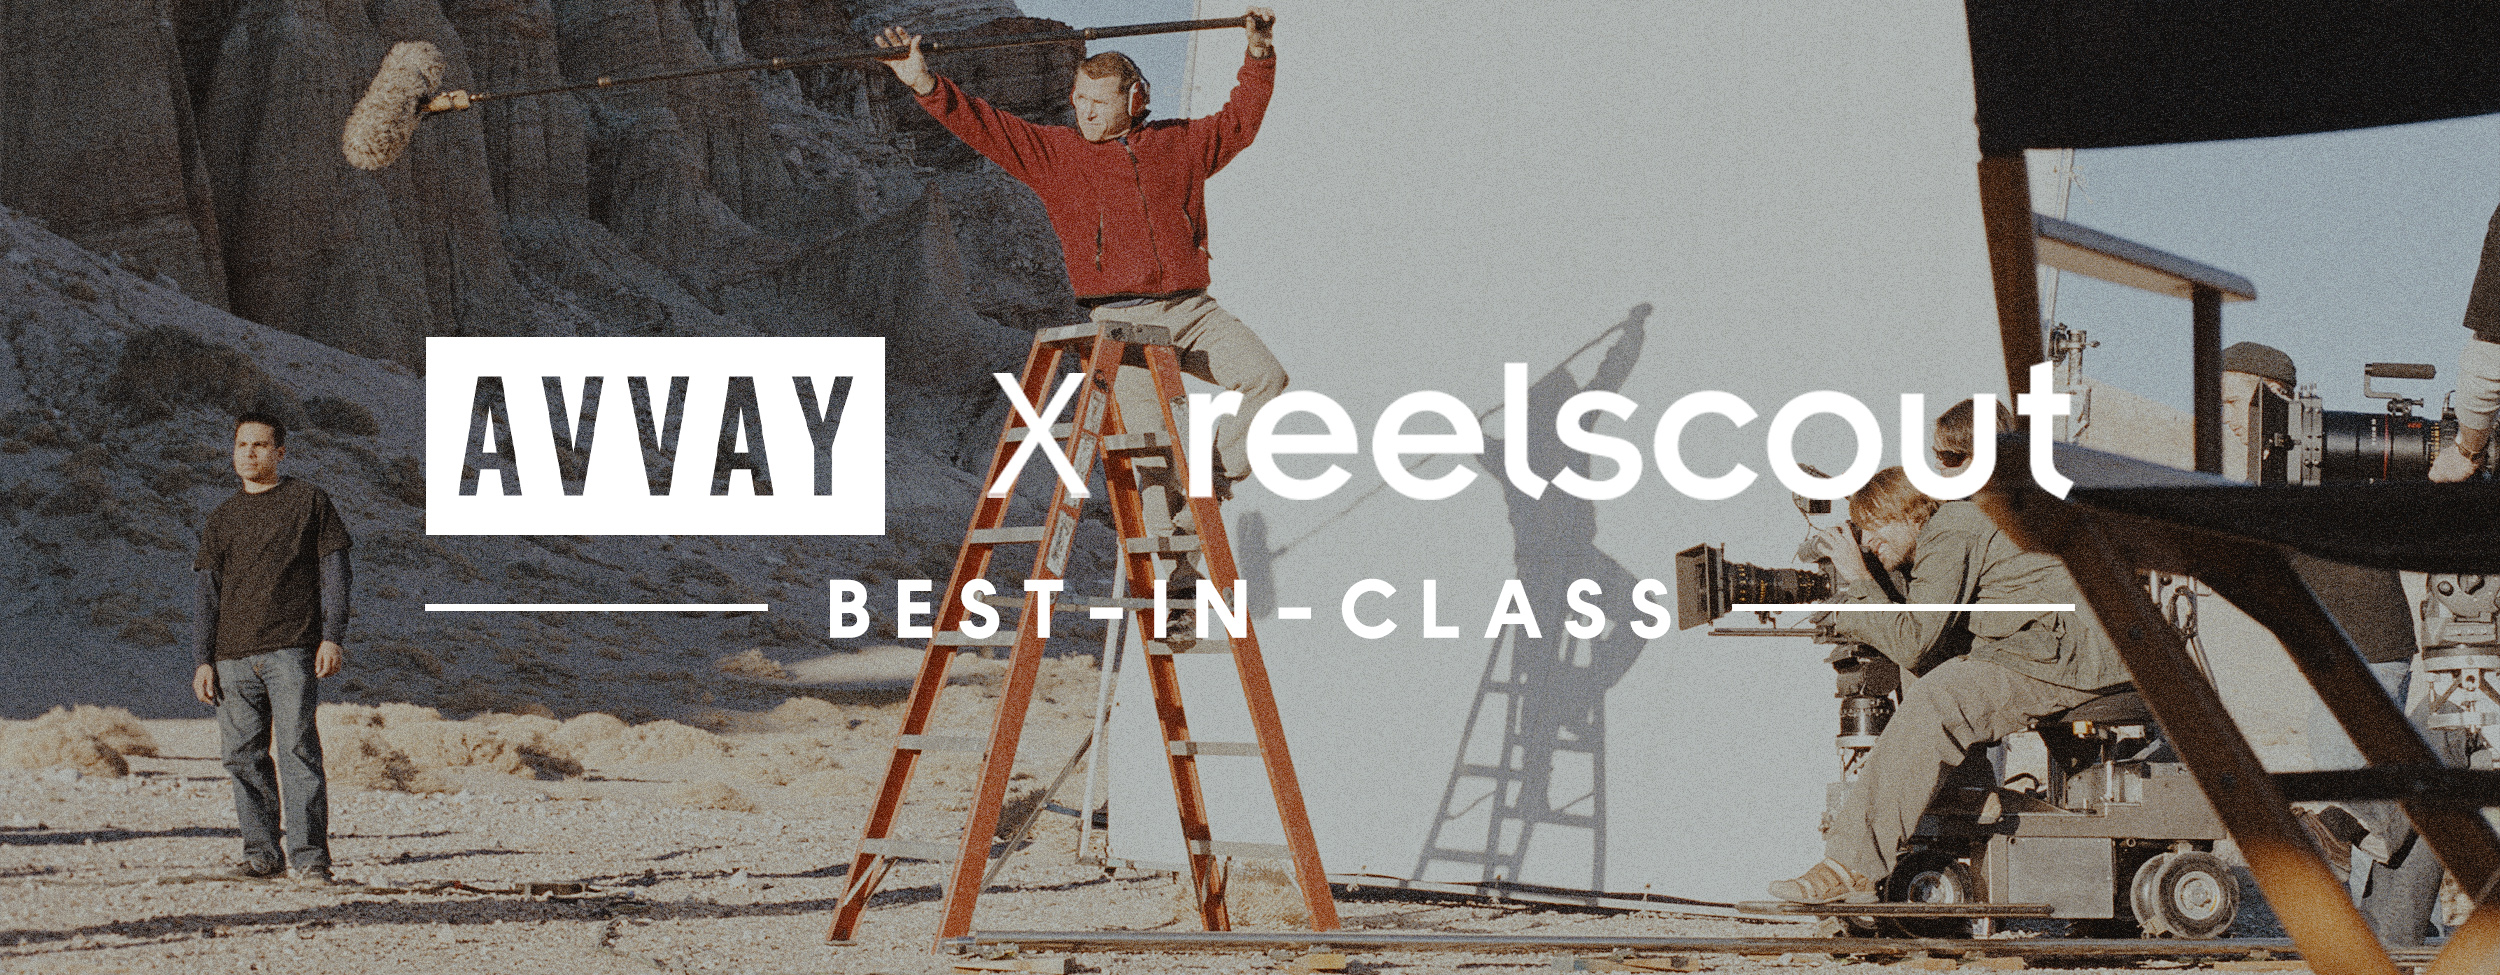 Best Photographers in Atlanta: AVVAY X Reel-Scout Best In Class